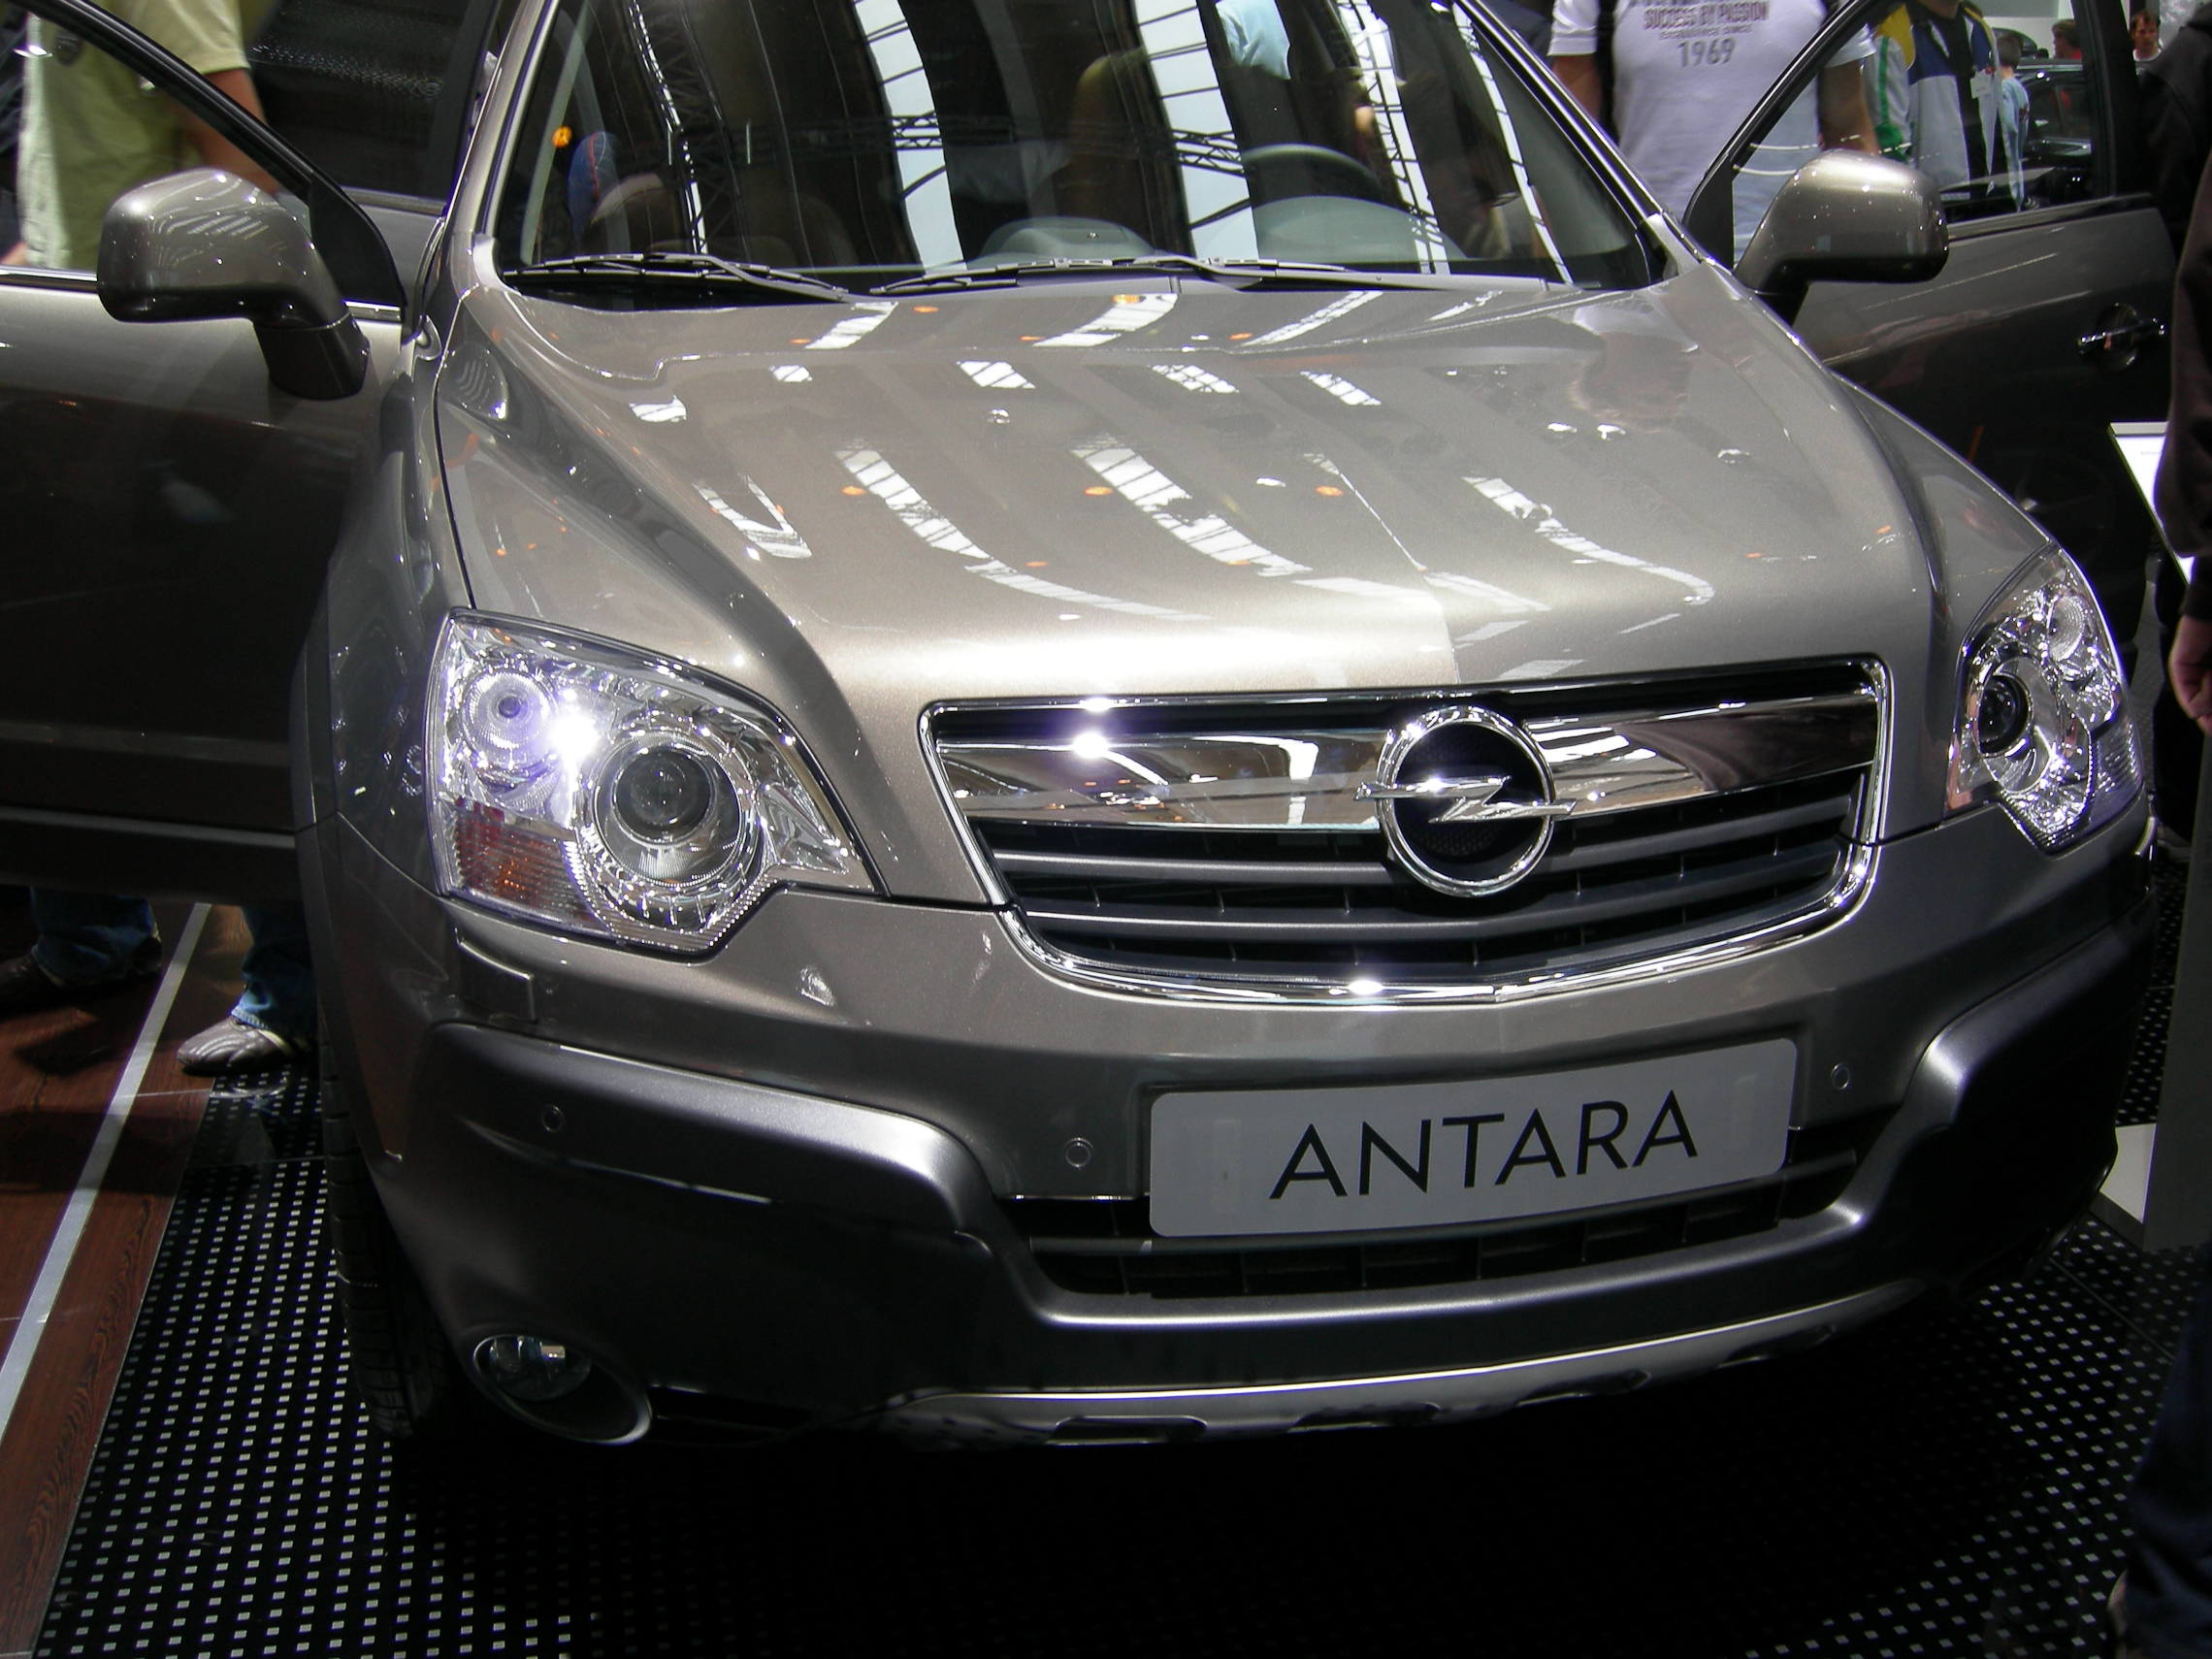 IAA 2007 - Opel Antara | Flickr - Photo Sharing!